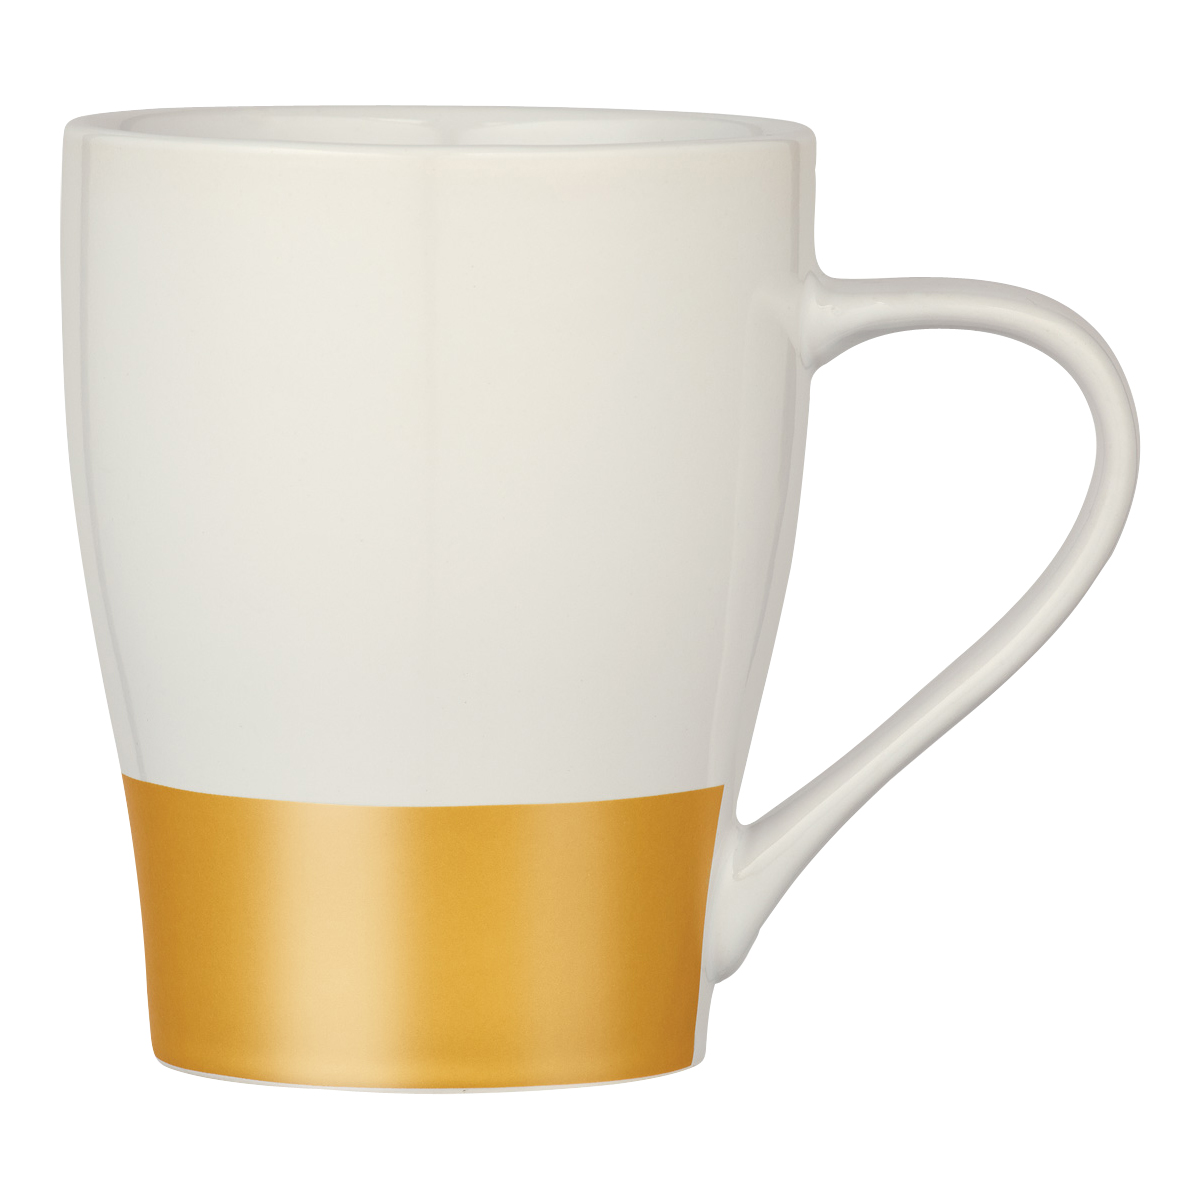 Metallic Gold Base Metallic Stripe Mug (16oz)